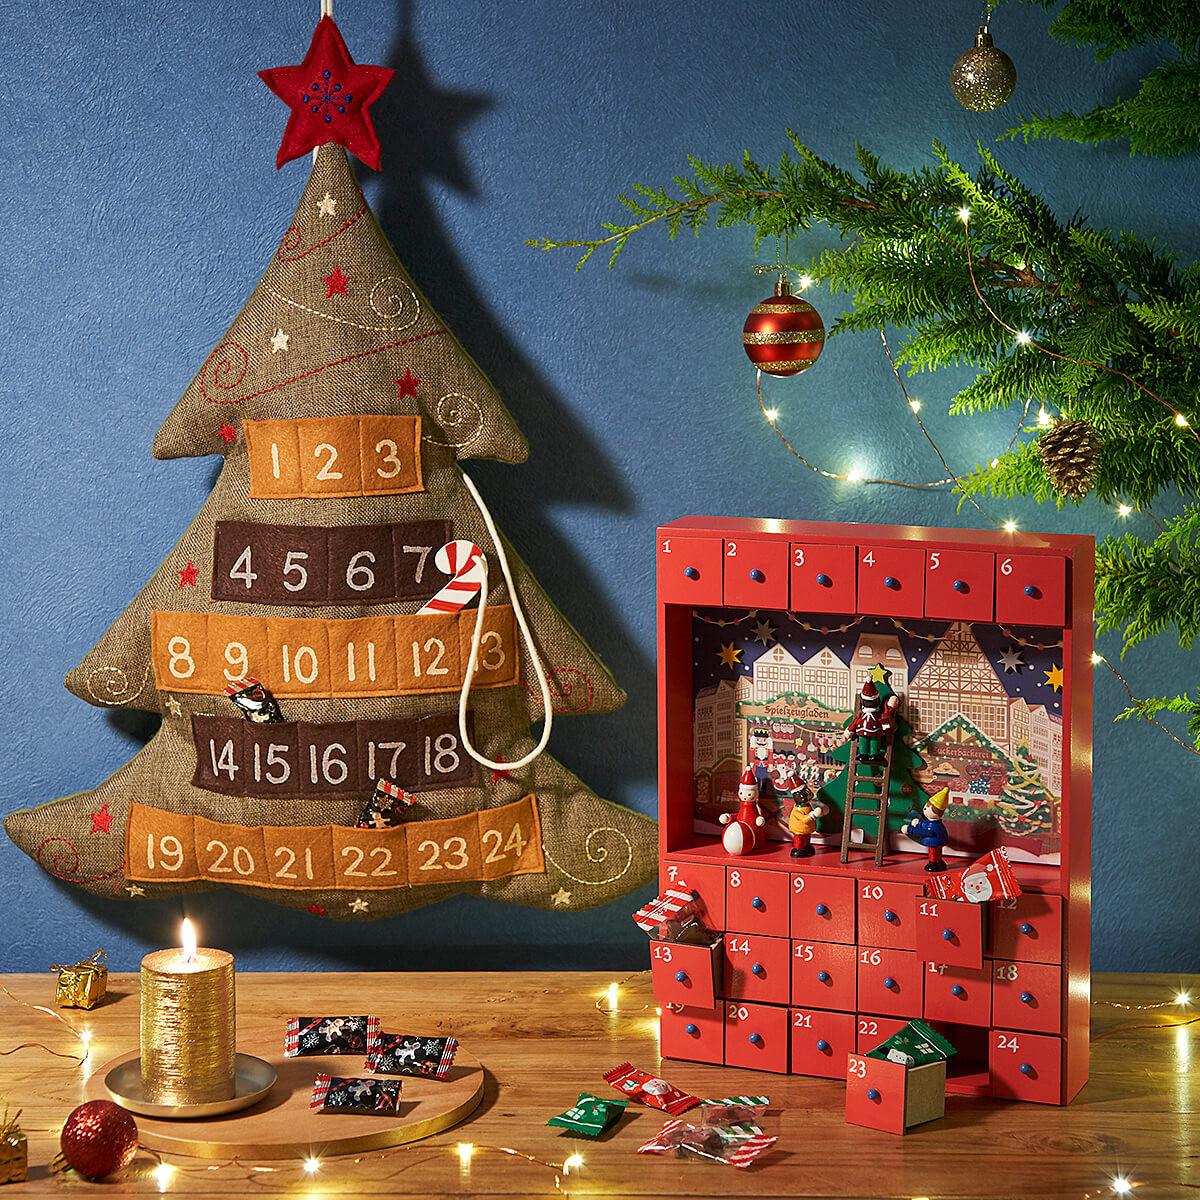 カルディ新商品 19年クリスマス限定 カウントダウンカレンダーからお菓子まで0種類以上 ヨムーノ